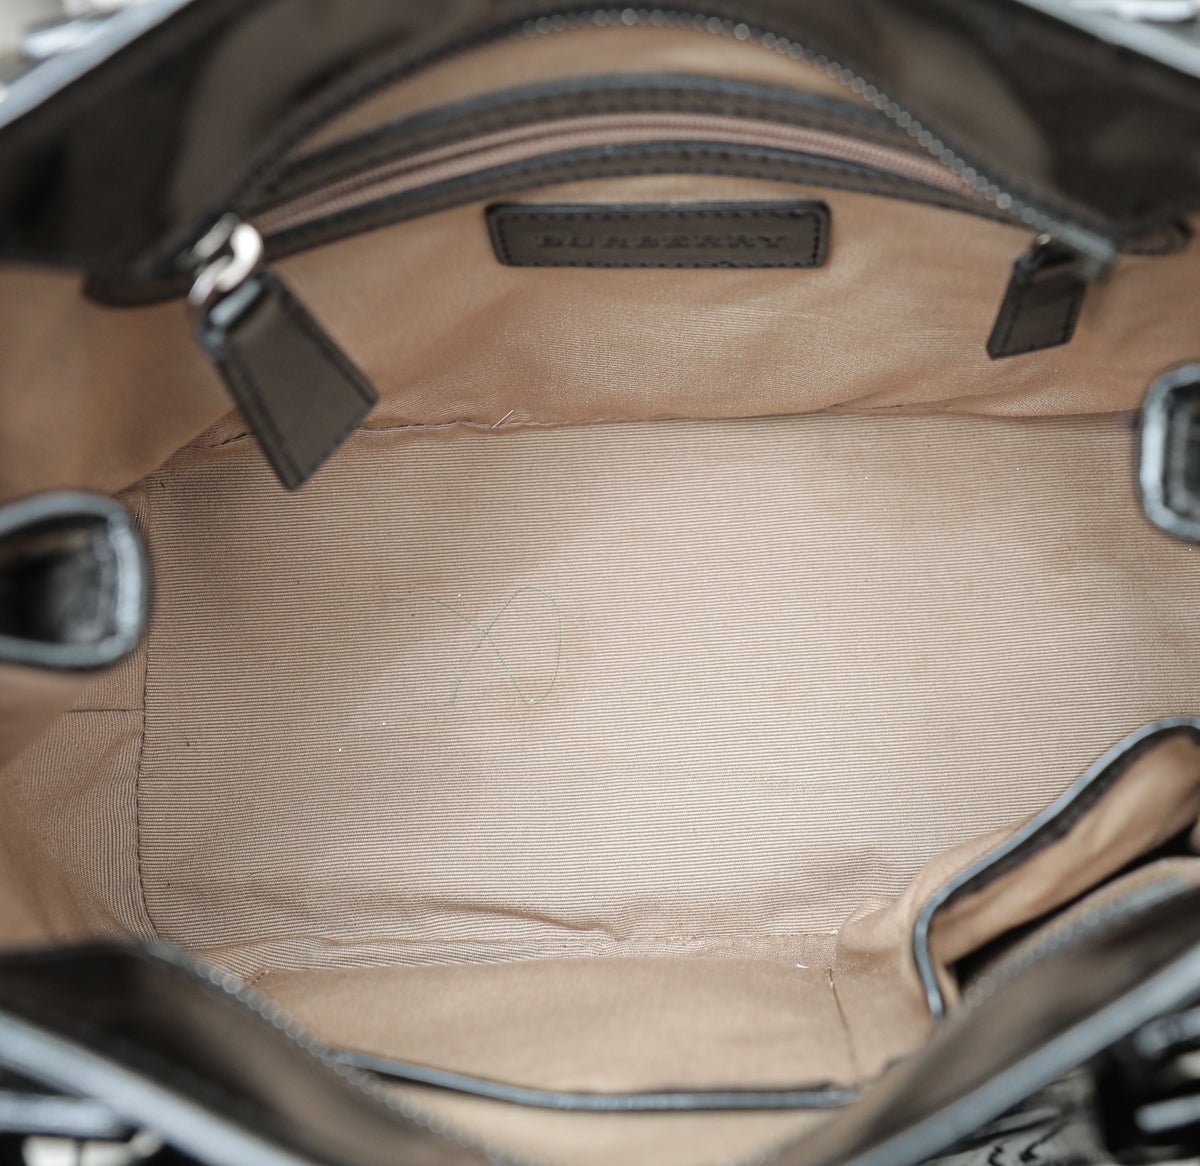 Burberry - Burberry Black Nova Check Tote Bag | The Closet